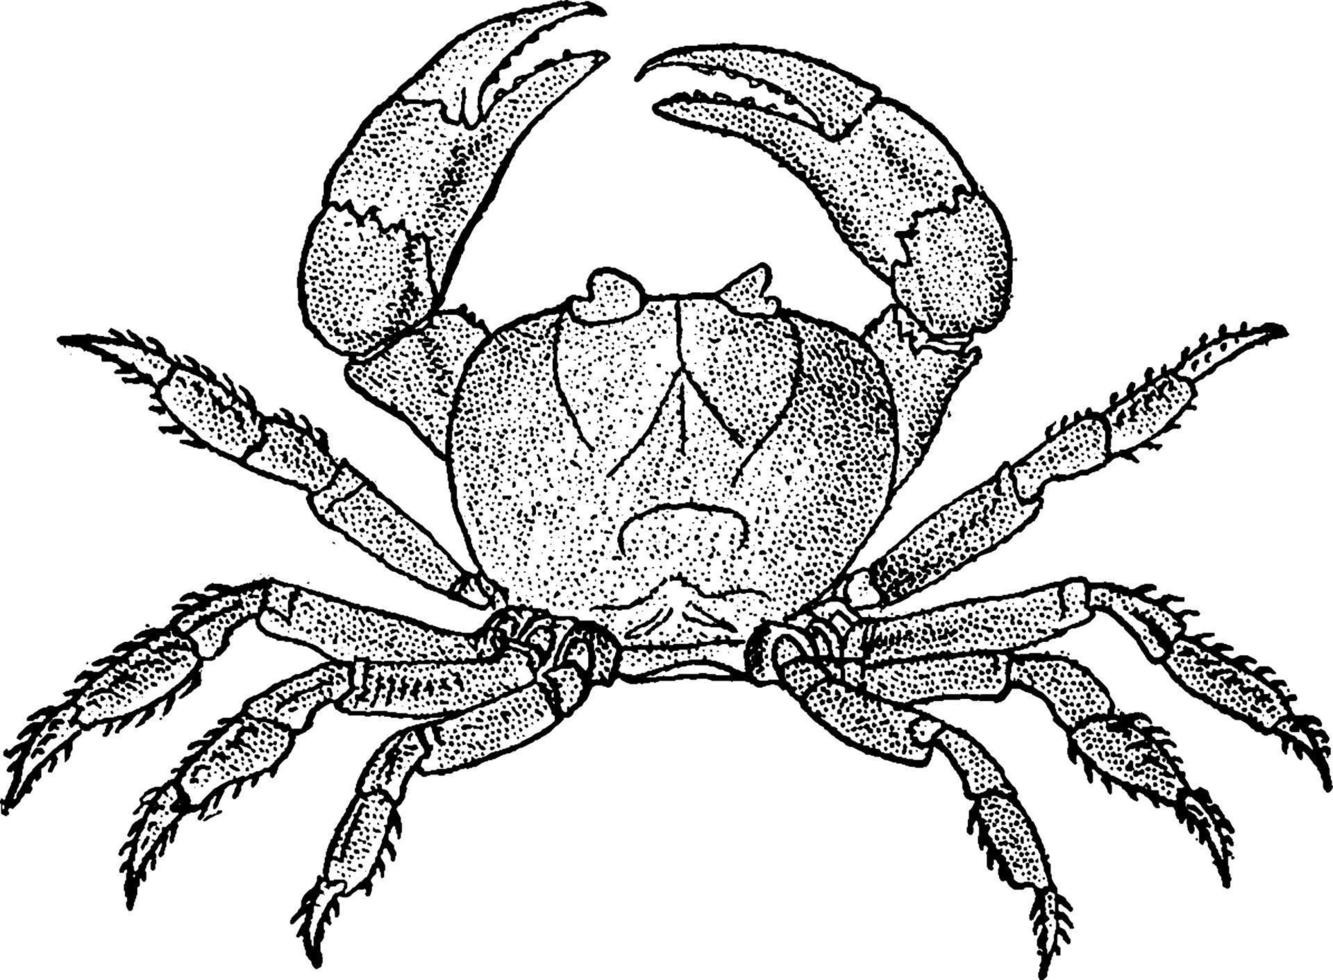 Land Crab, vintage illustration. vector